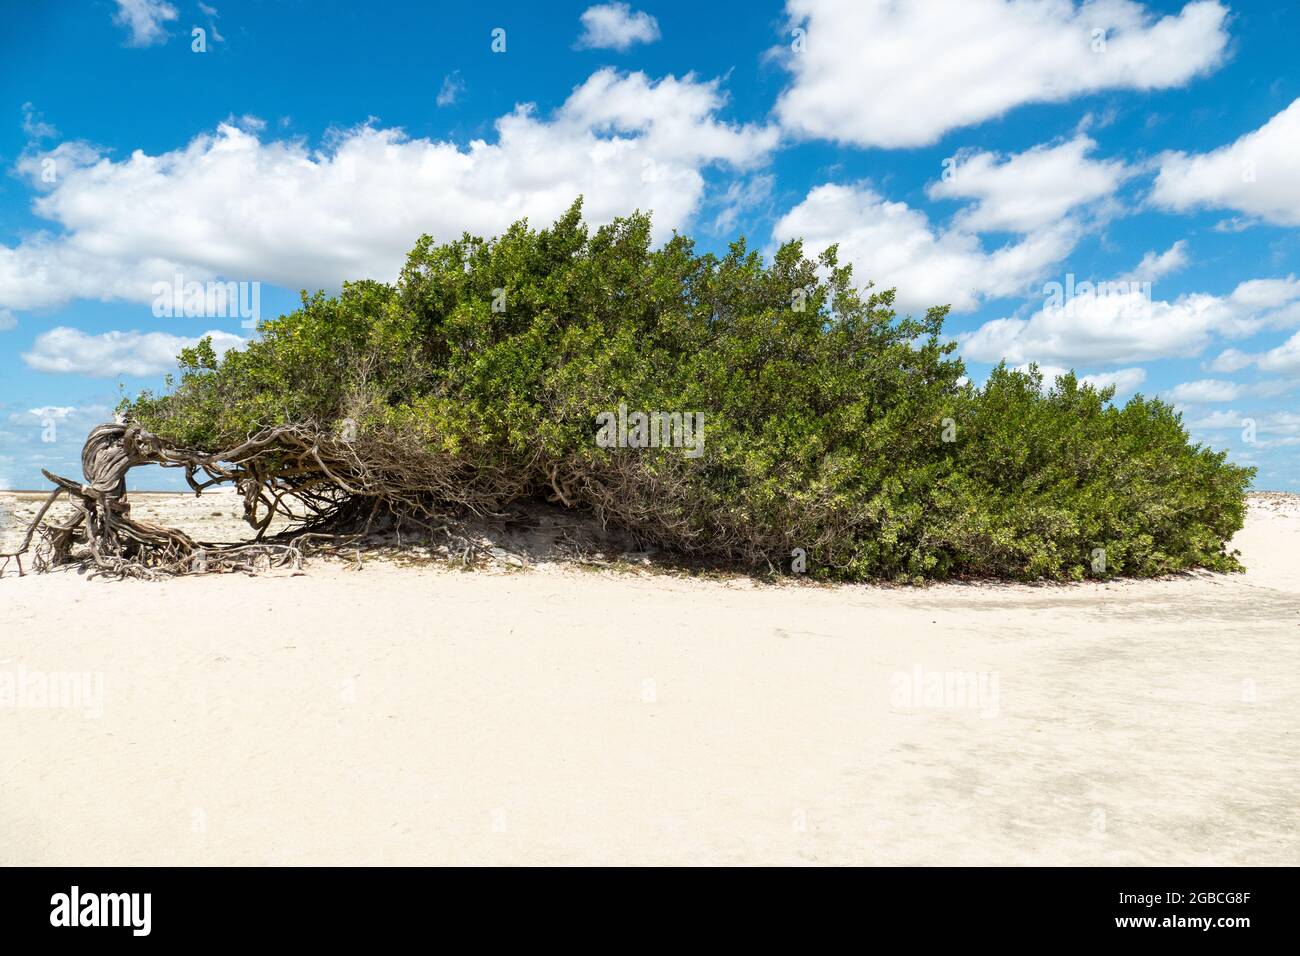 Der Faulheit Baum ist ein Baum, der durch die Aktion des Windes geformt wurde, Biegen über den Sand von Jericoacoara, Staat Ceara, Brasilien Stockfoto